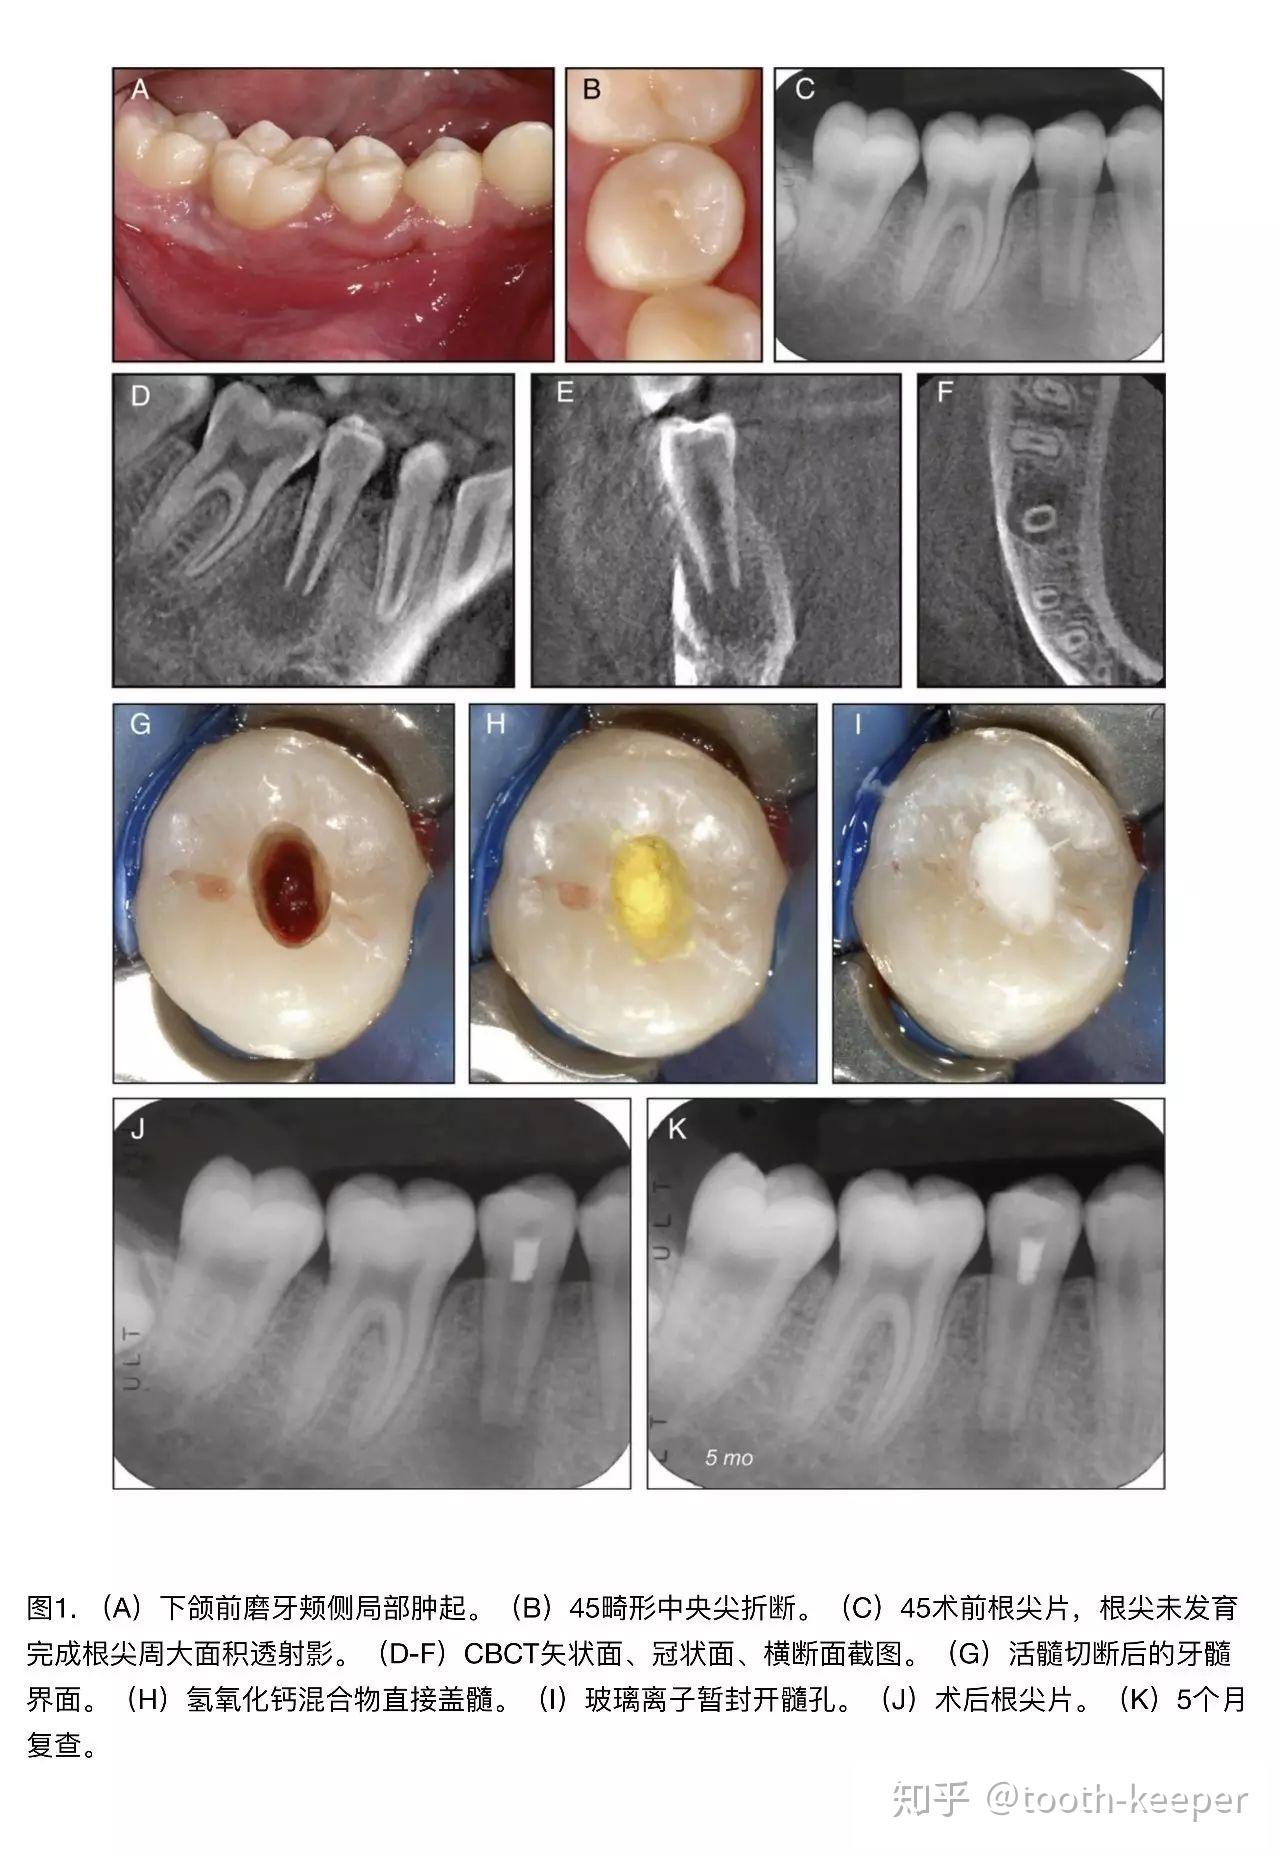 Root Fracture-牙根裂掉 | 高雄根管治療專家-牙髓病專科王俊欽牙醫師